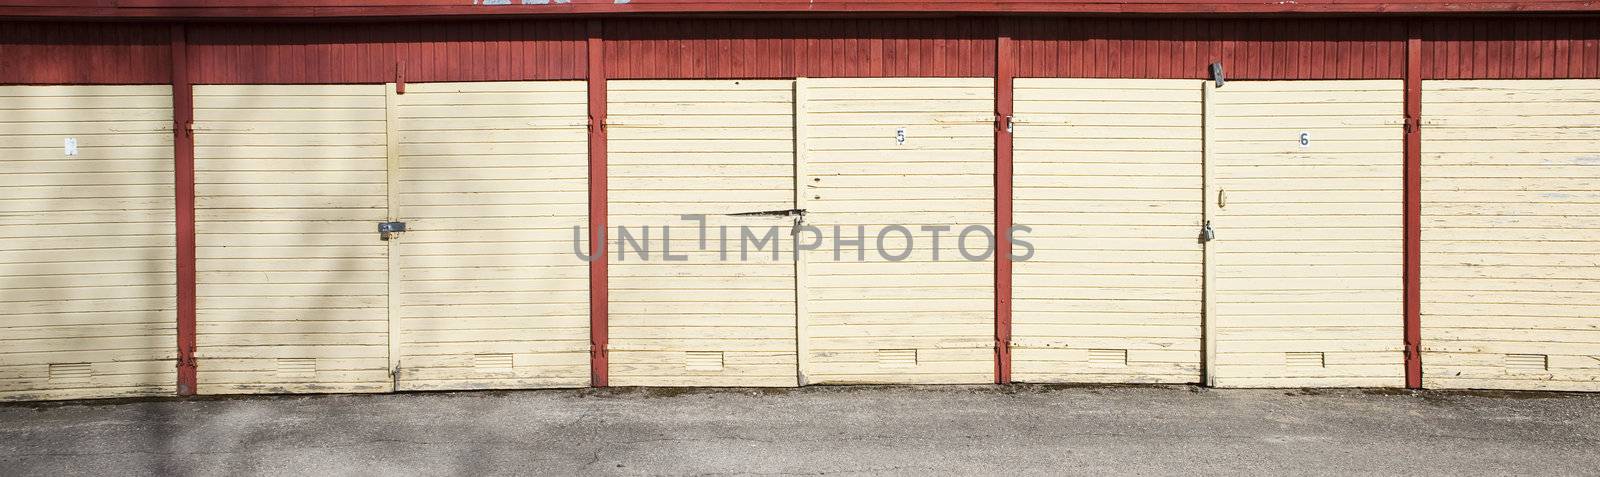 Garage doors in the sun by gemenacom